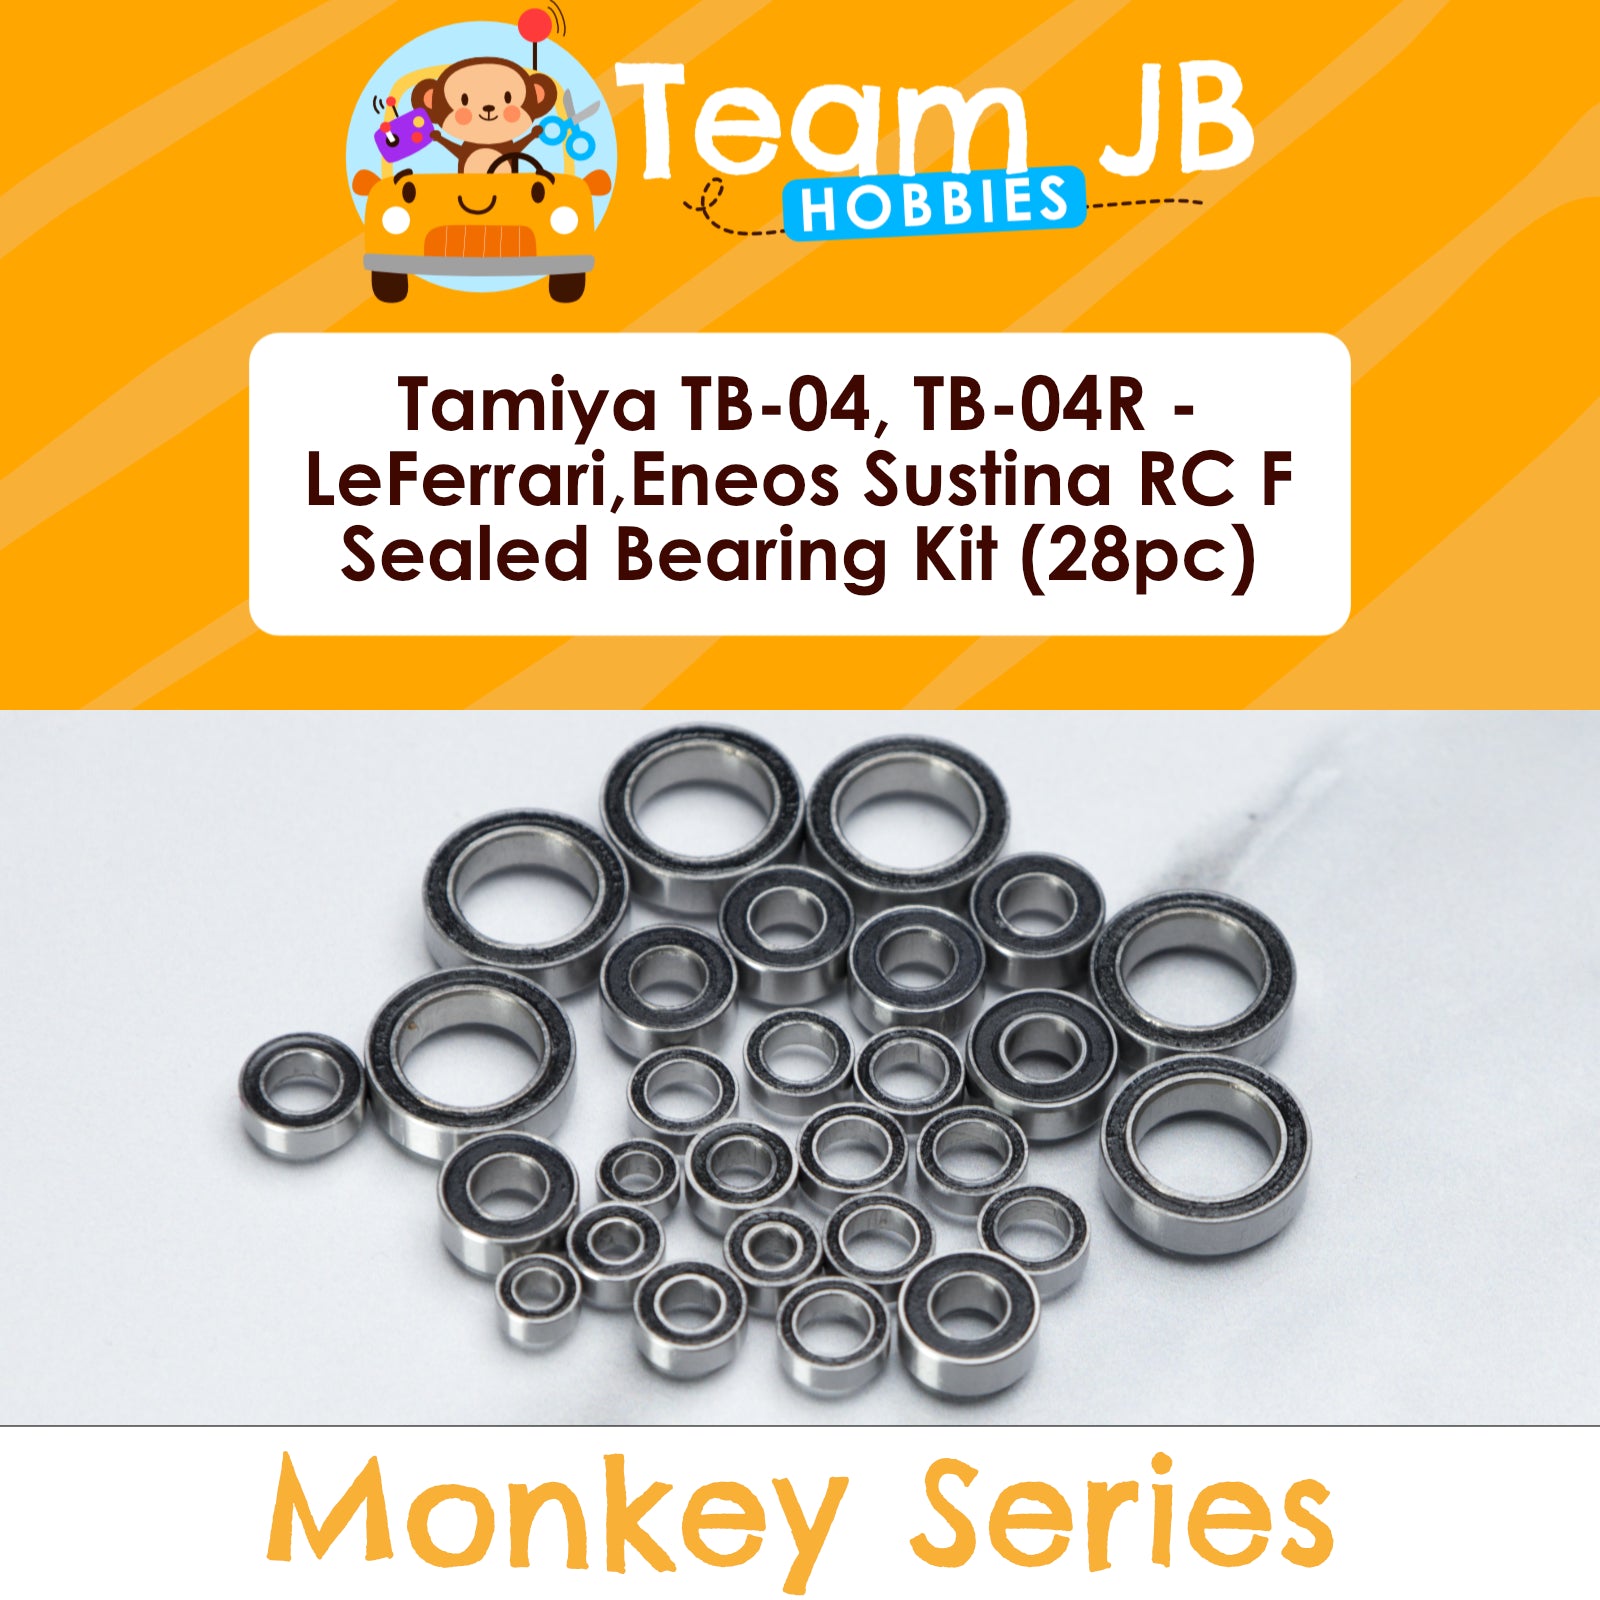 Tamiya TB-04, TB-04R - LeFerrari, Eneos Sustina RC F - Sealed Bearing Kit